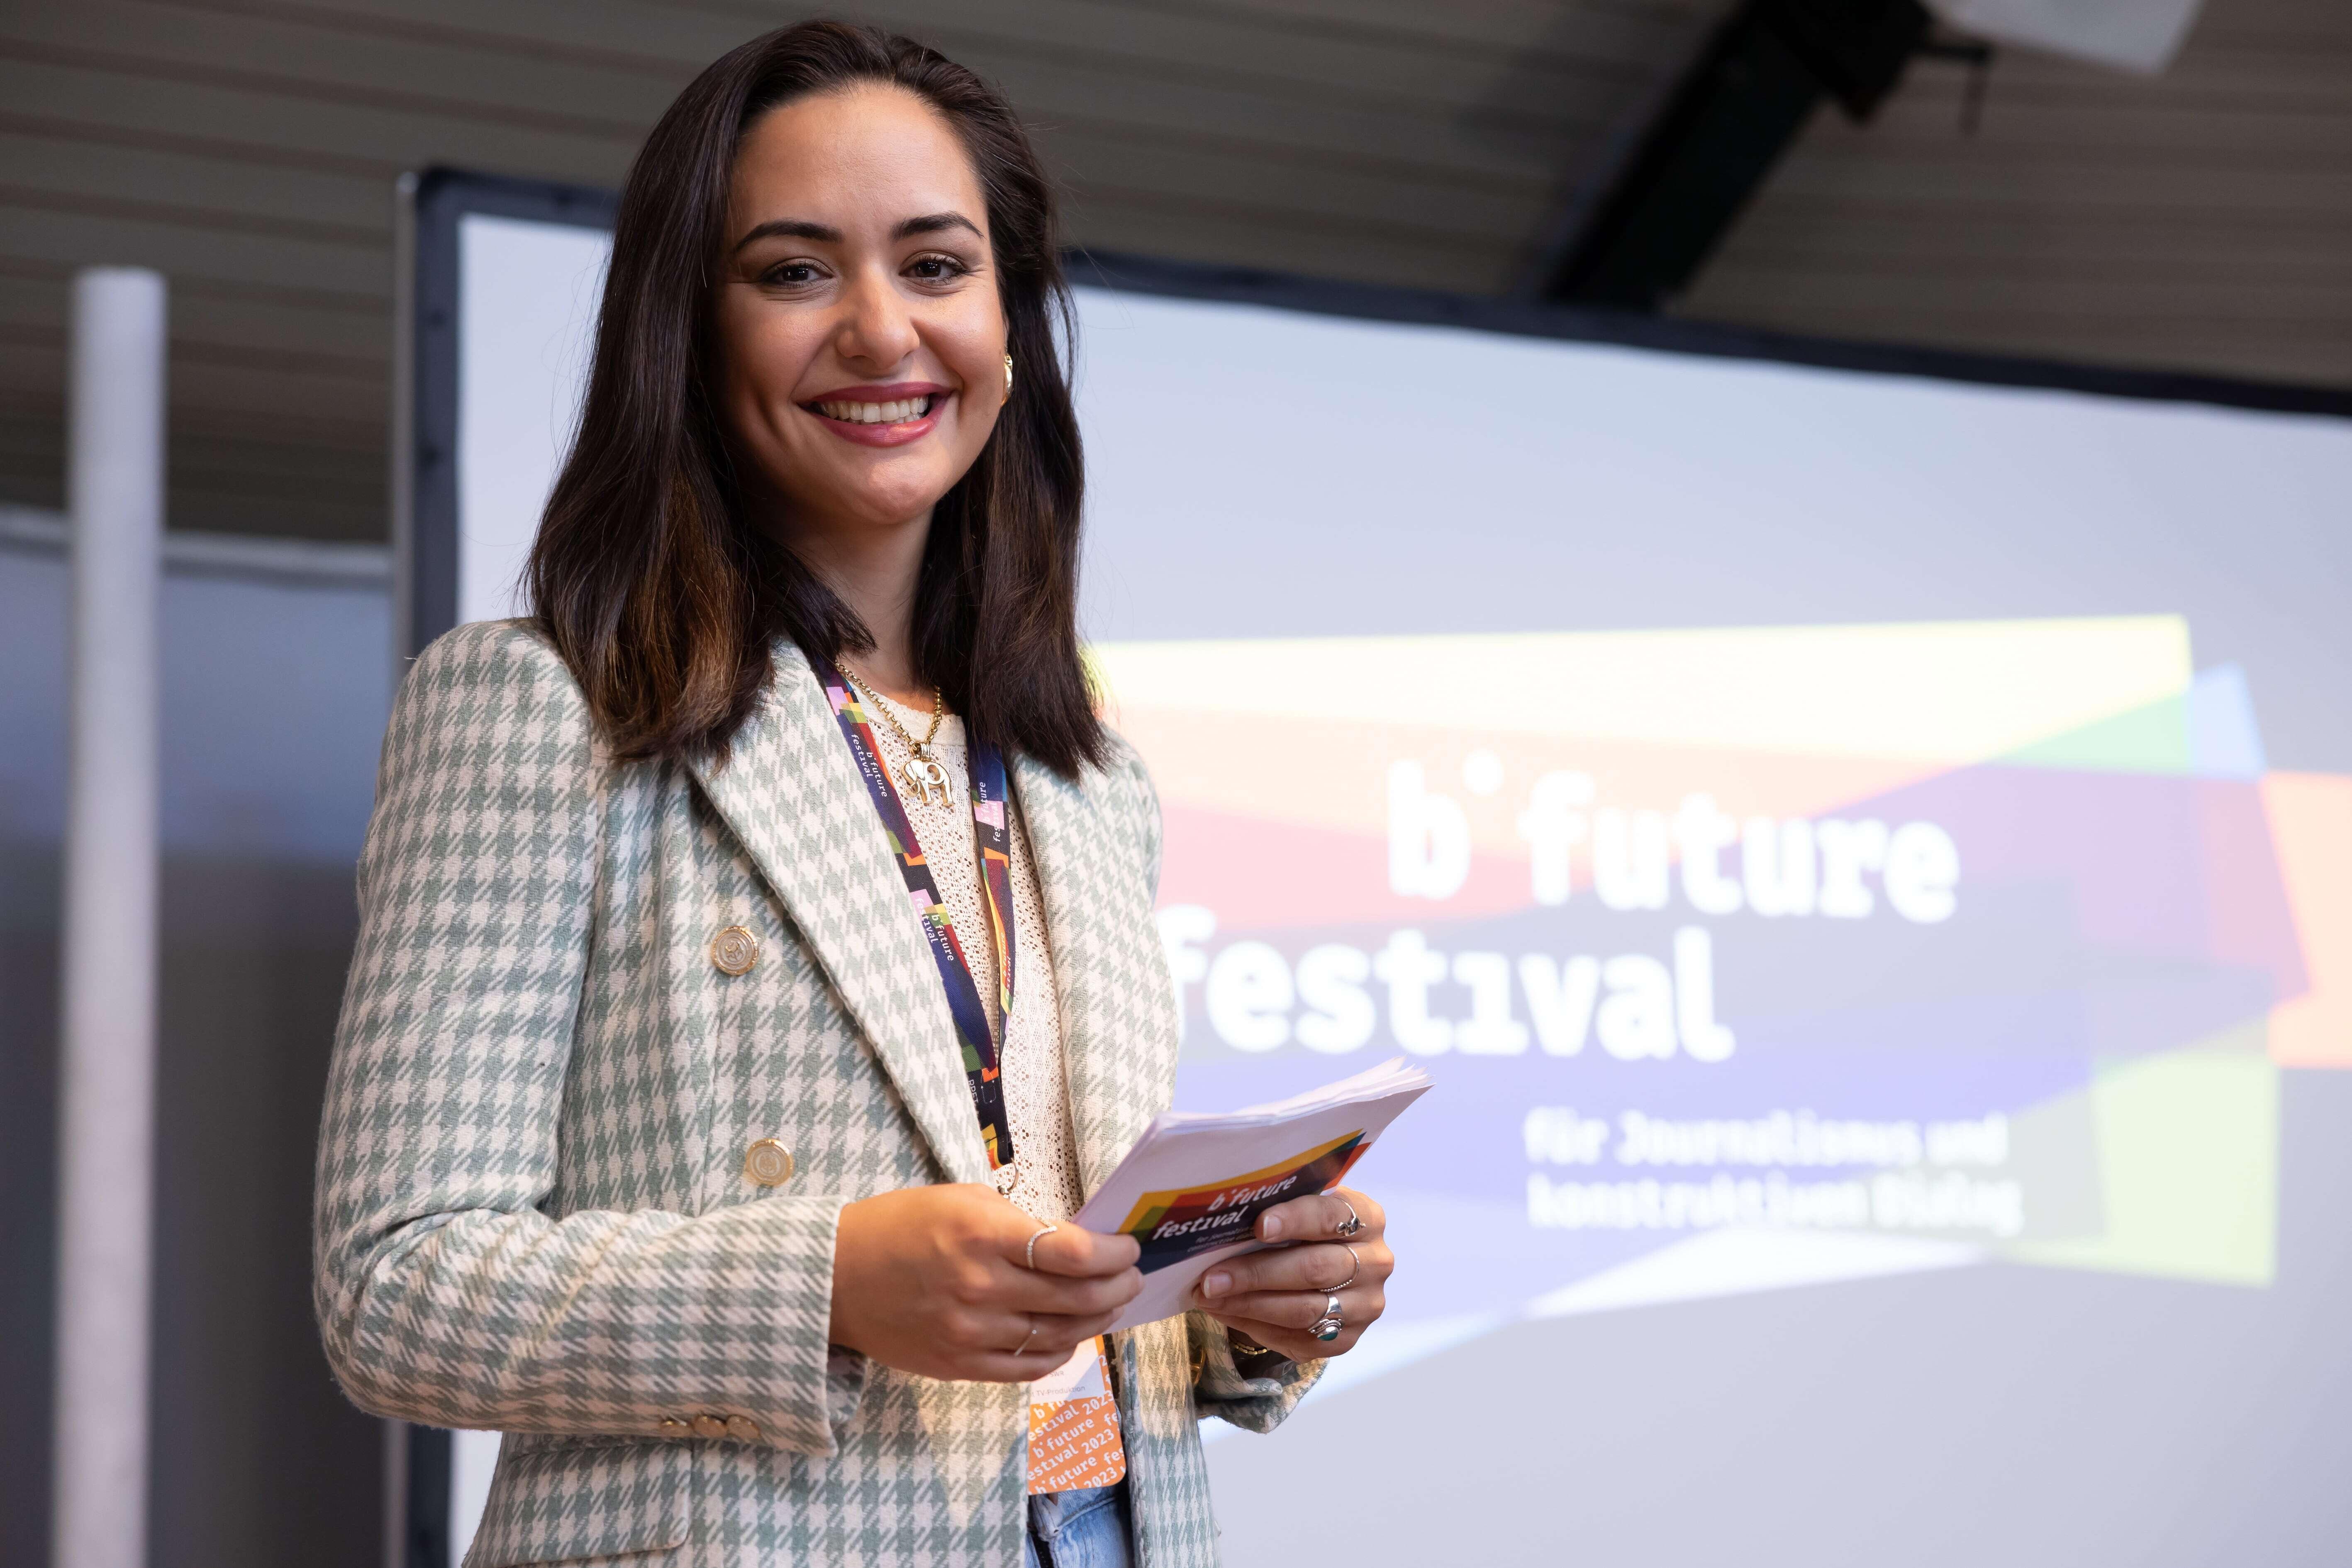 Özge M. Kabukçu lächelt in die Karte während ihrer Moderation auf der Bühne. Sie hält Moderationskarten in der Hand, hinter ihr sieht man das Logo des b° future Festivals auf einem Bildschirm.